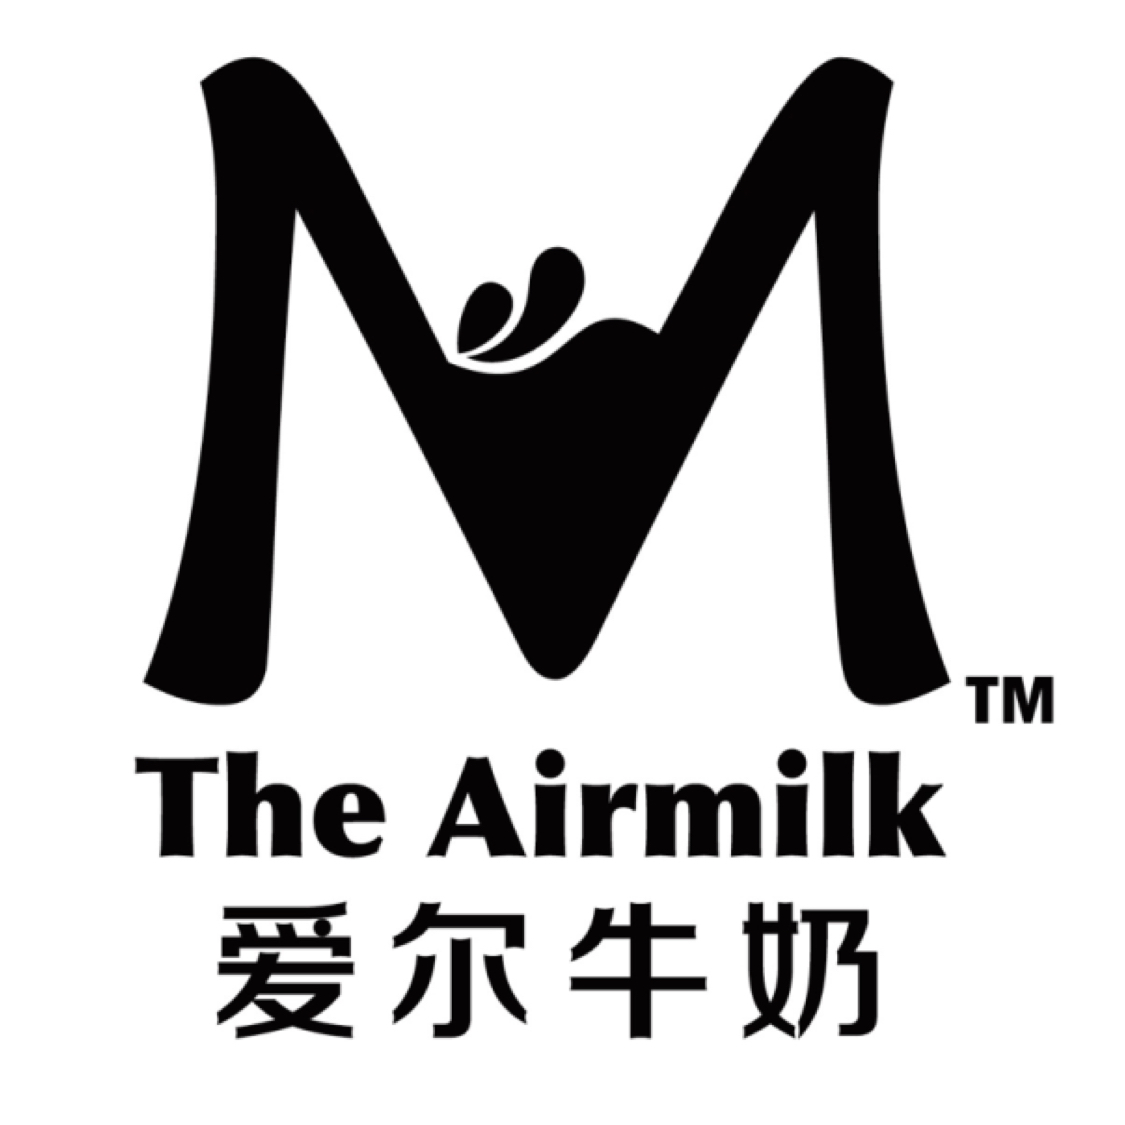 鞍山厚己餐饮服务有限公司the airmilk爱尔牛奶是鞍山厚己餐饮服务